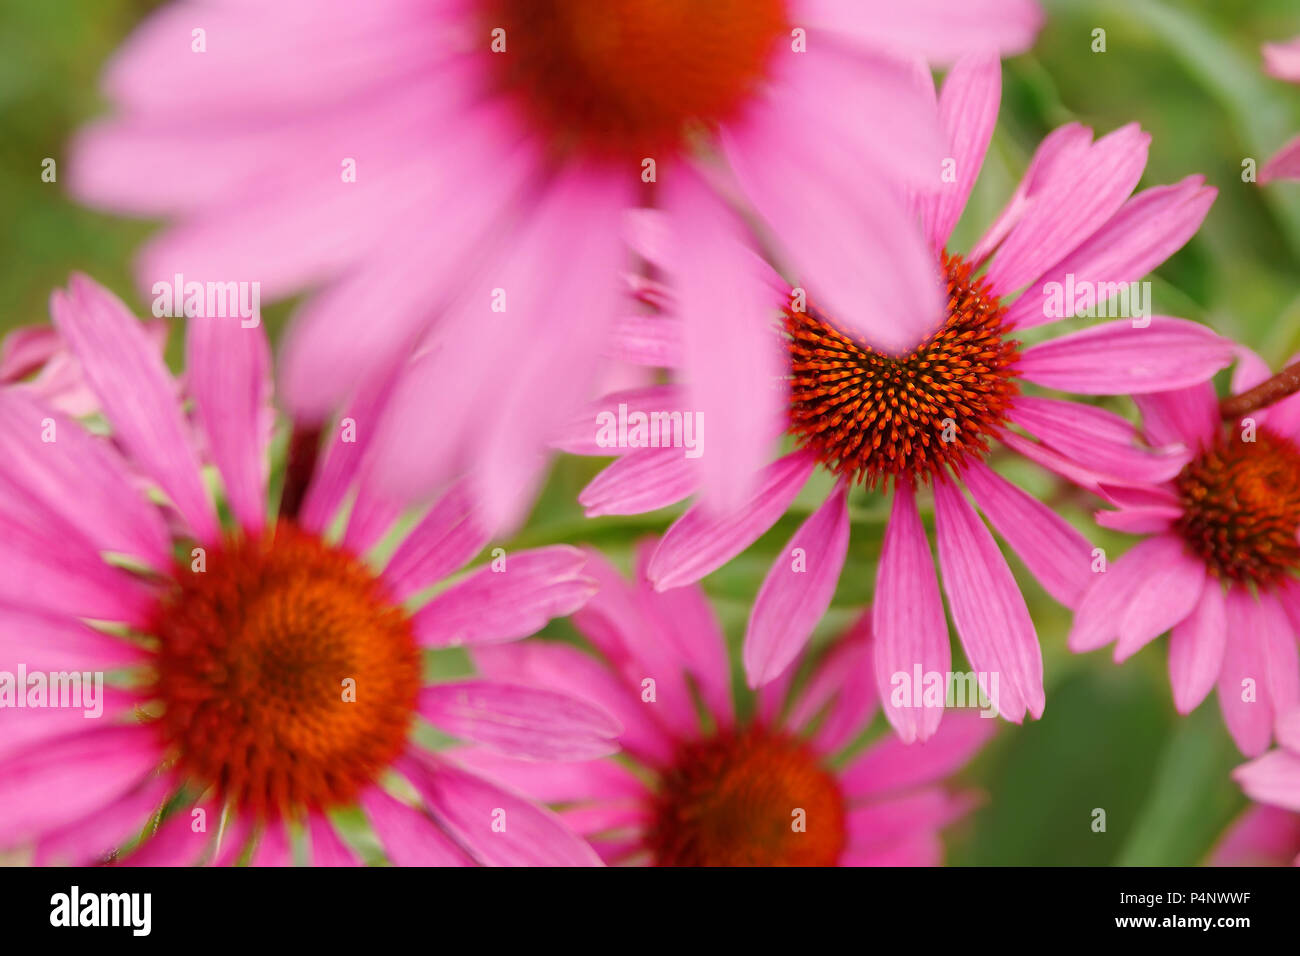 Espectacular por encima de la parte superior la saturación del color de una floración rosa Flores de echinacea Foto de stock